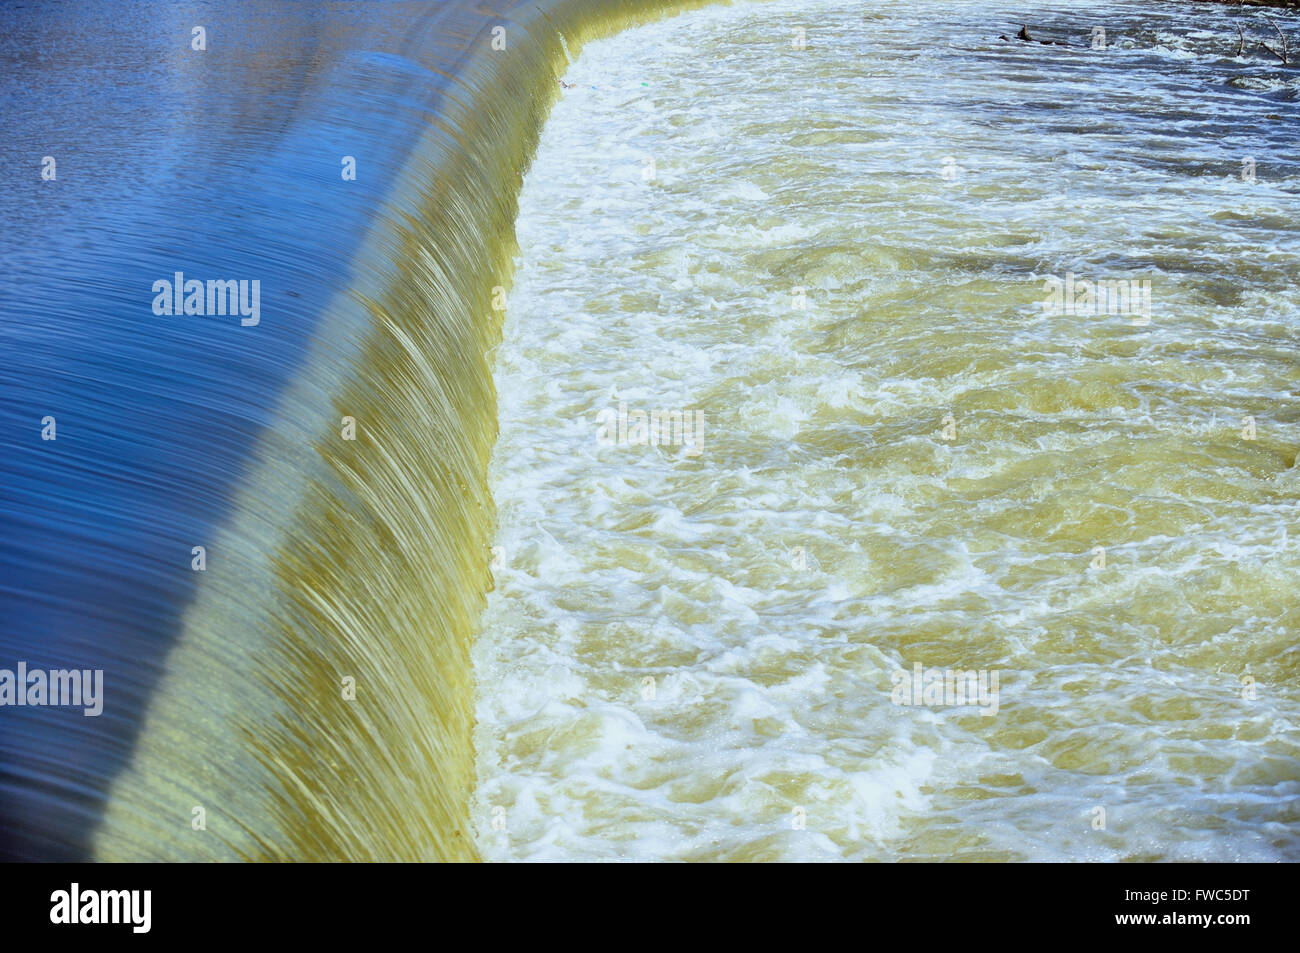 Verse de l'eau se précipiter sur un barrage de la rivière Fox dans un tourbillon d'activité. L'Elgin, Illinois, USA. Banque D'Images